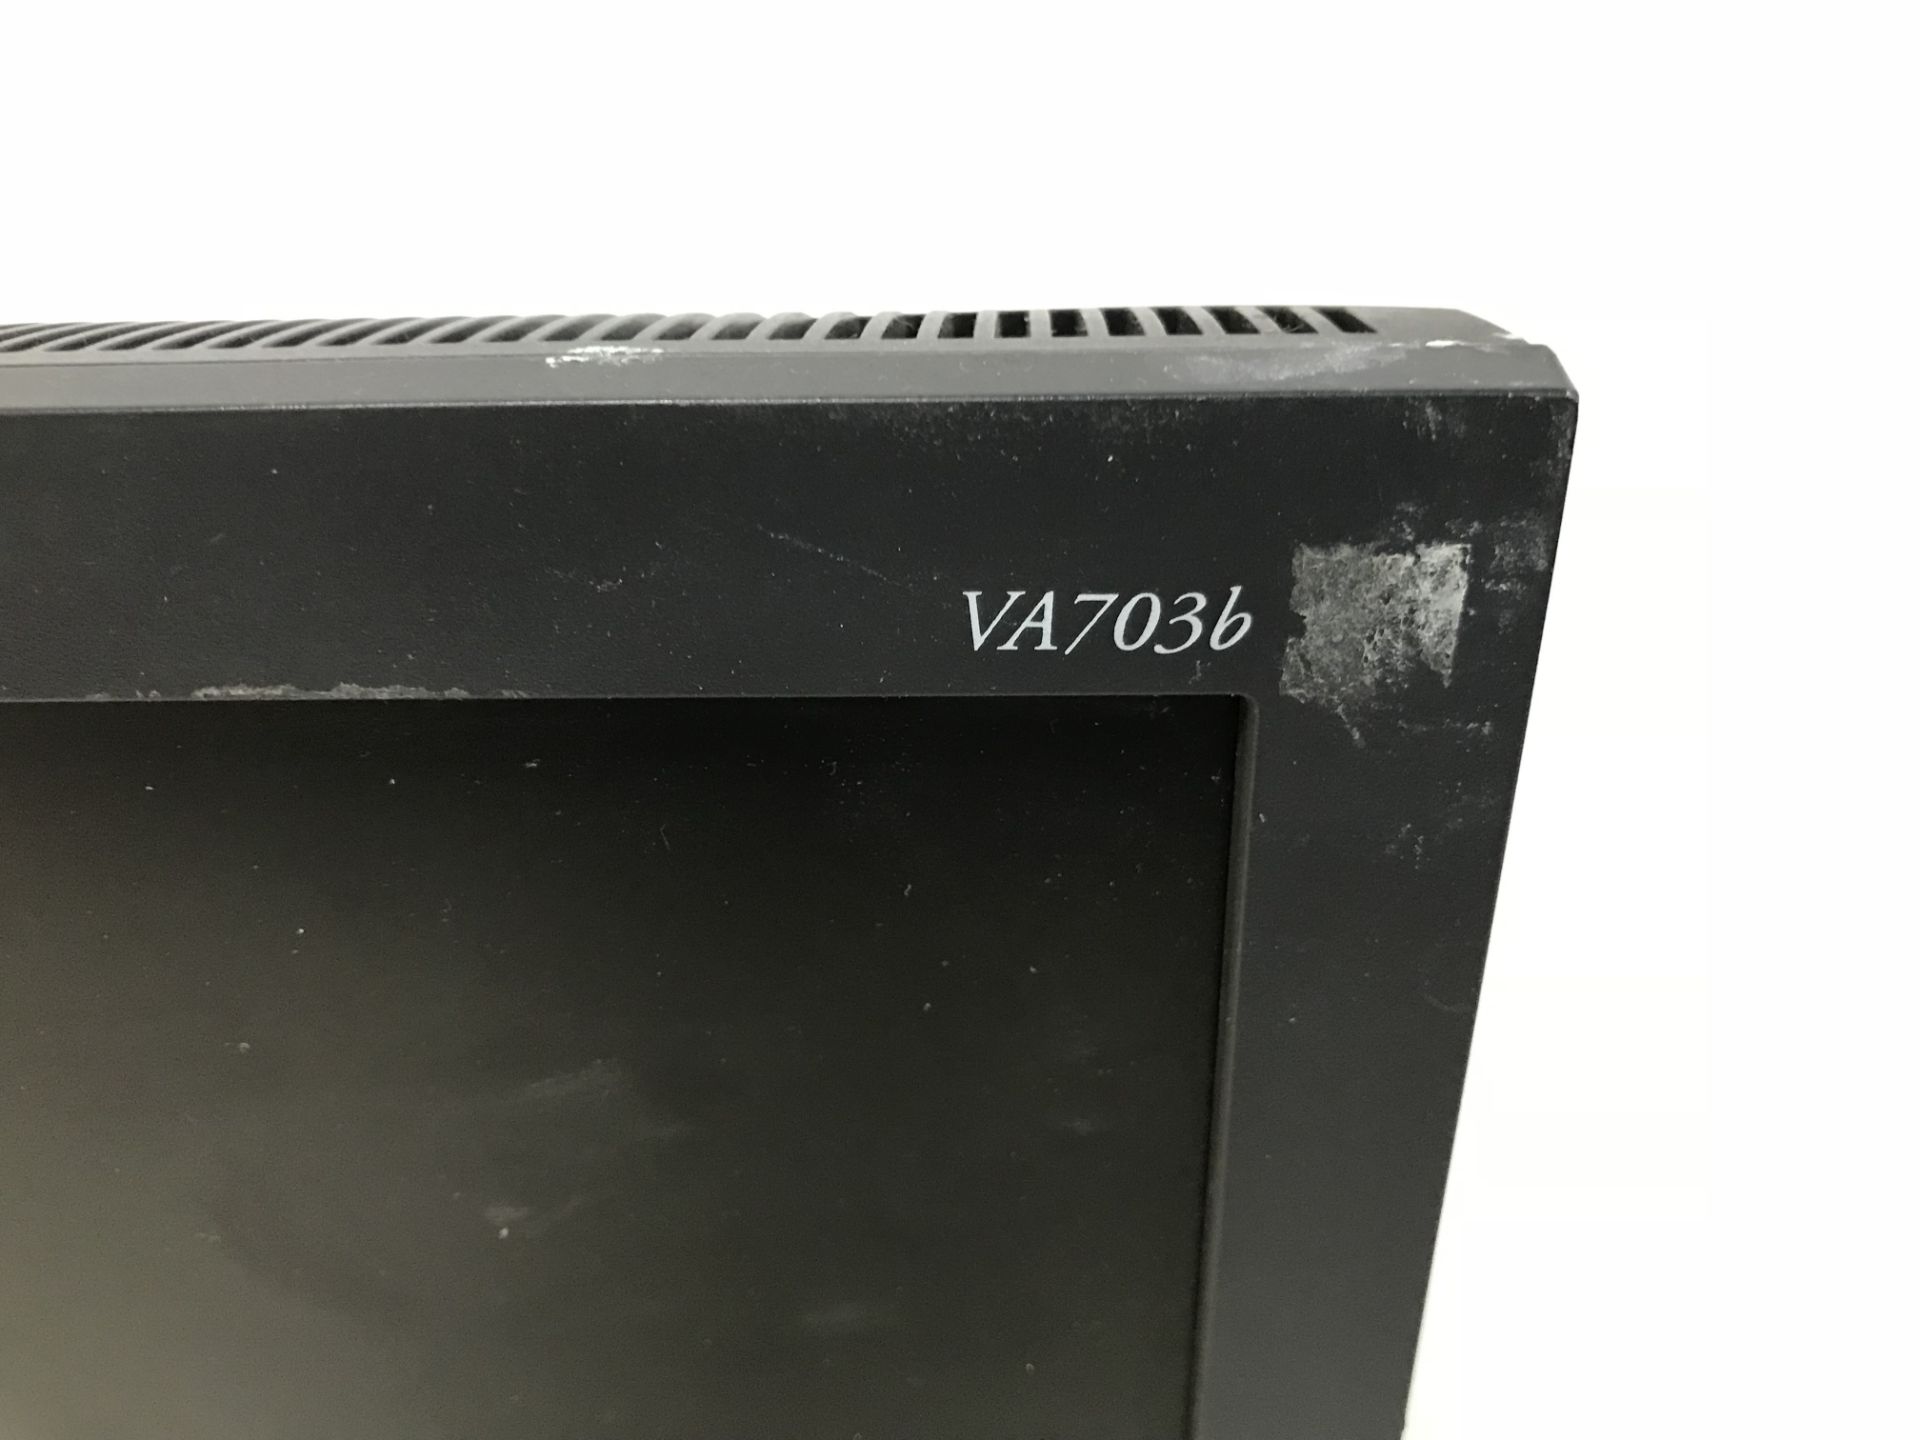 10 x Viewsonic VA703B Computer Monitors - Image 2 of 2